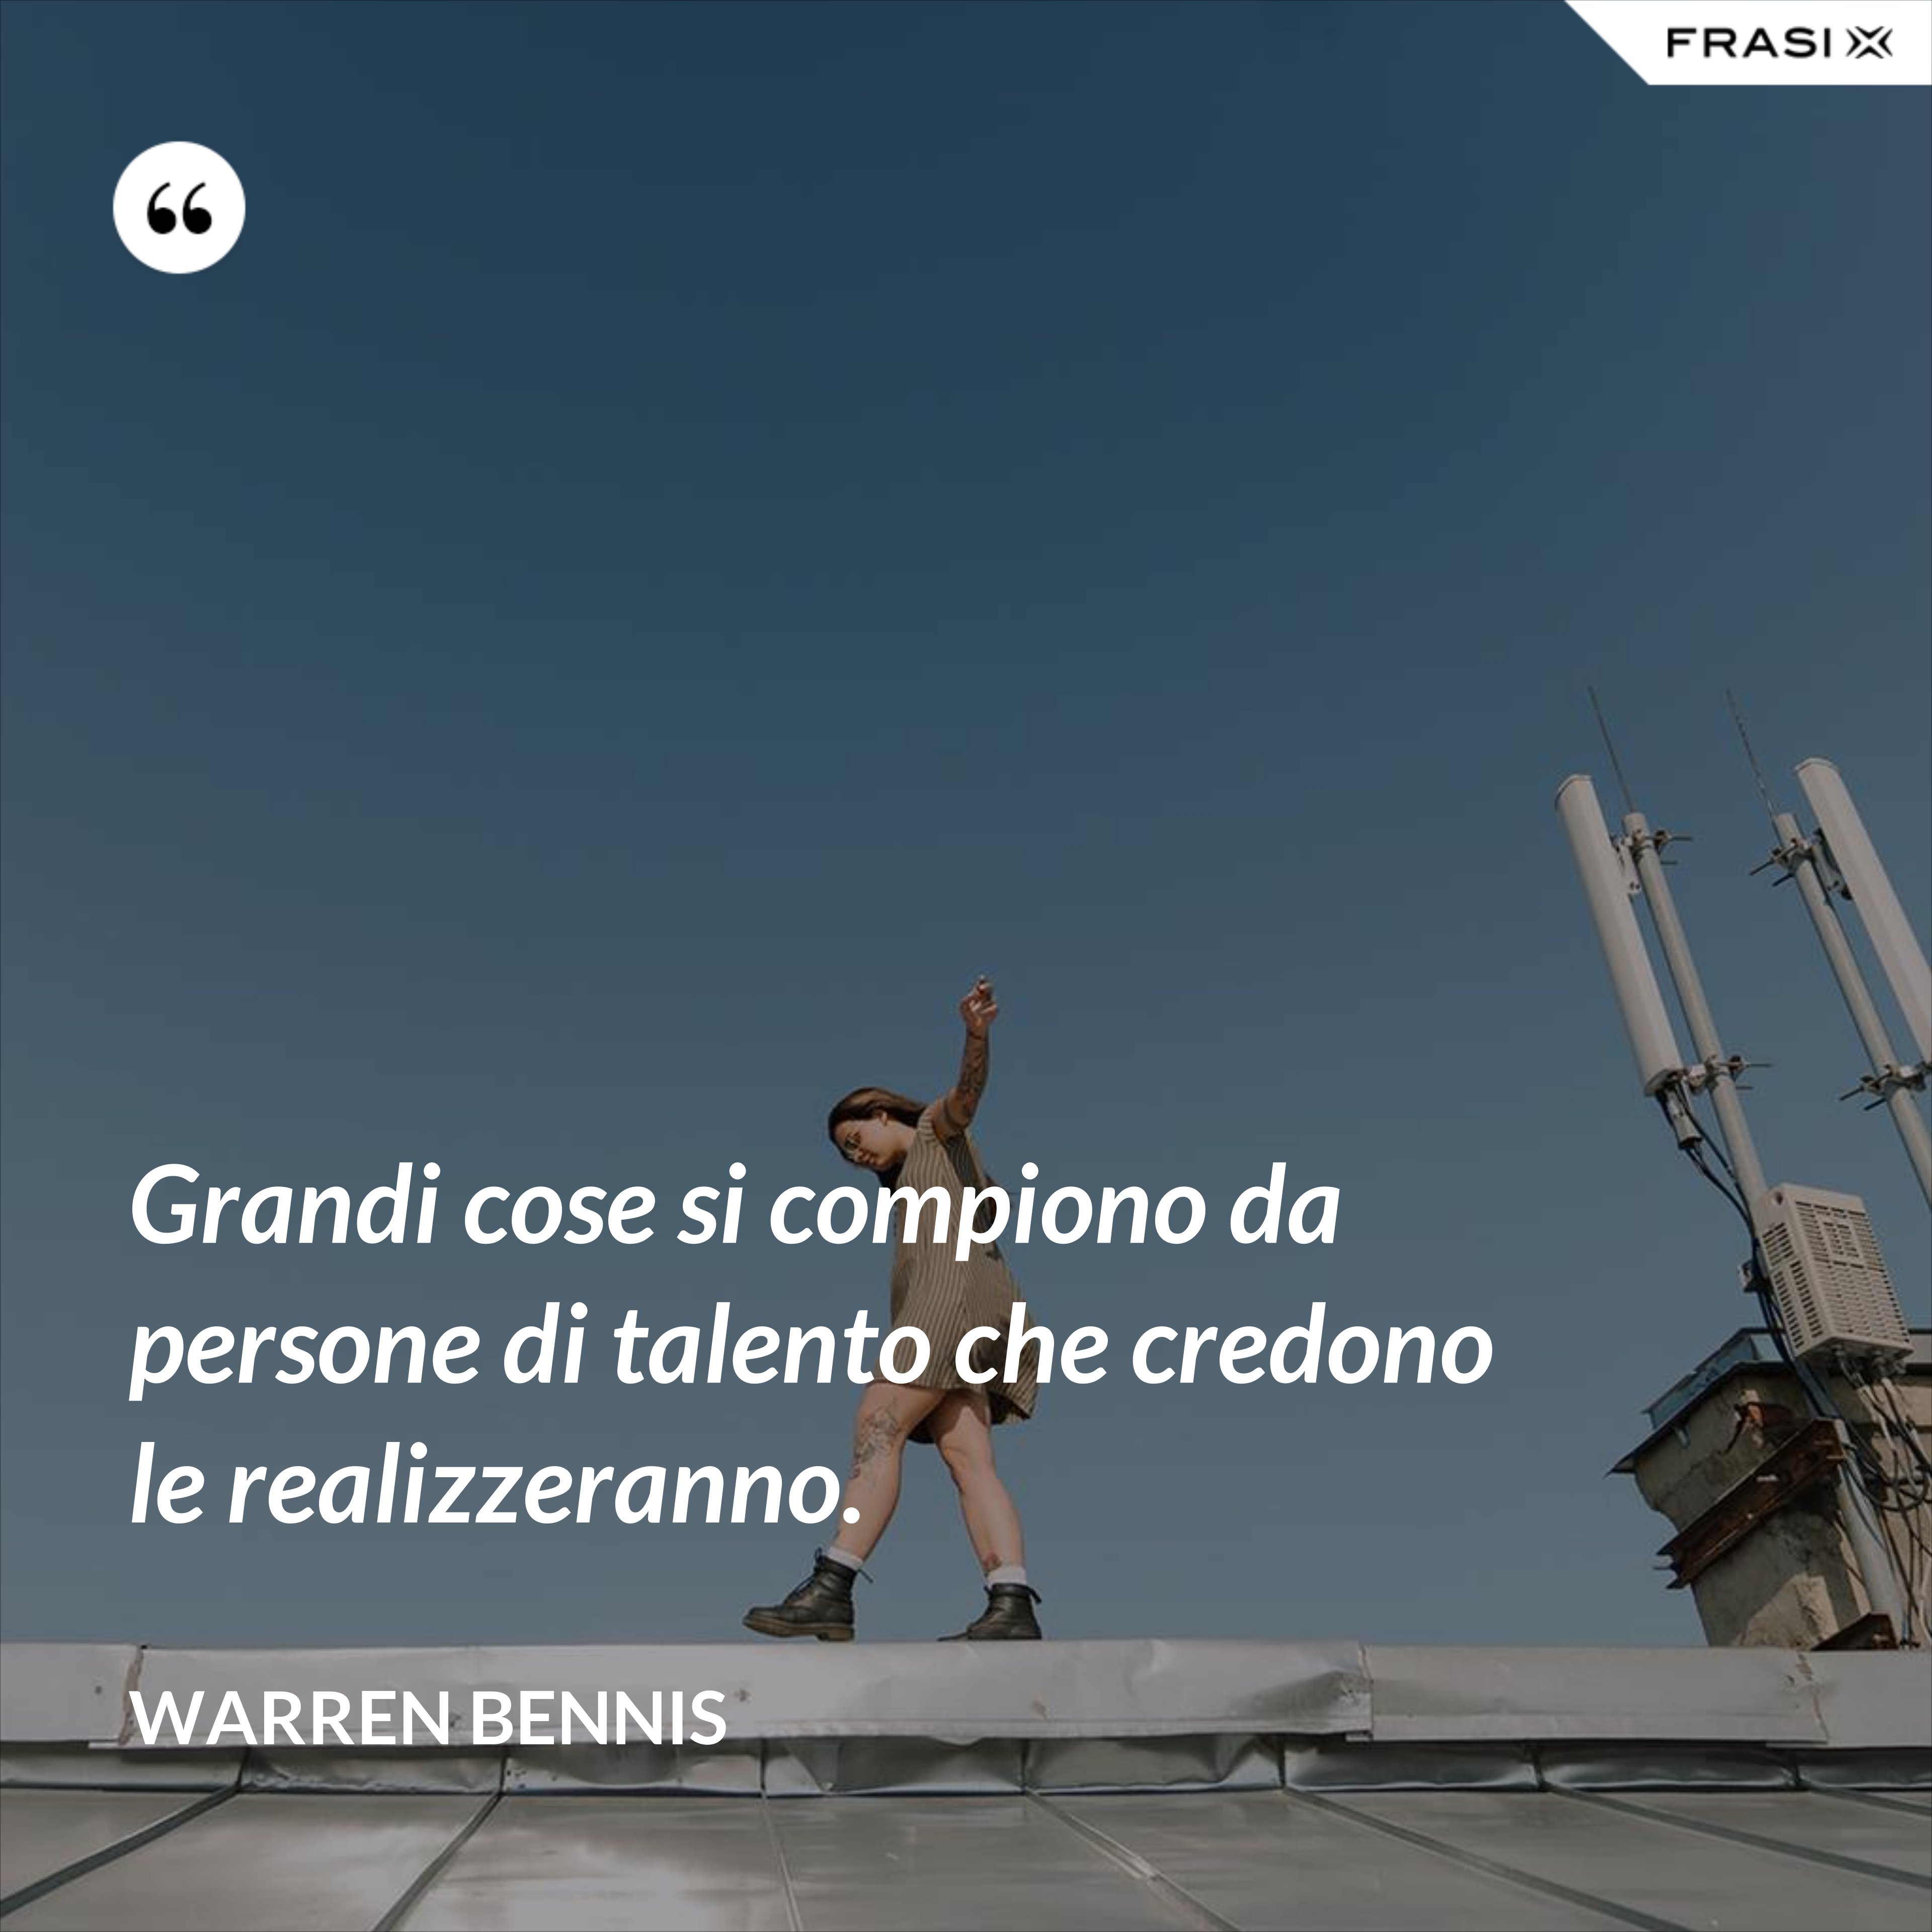 Grandi cose si compiono da persone di talento che credono le realizzeranno. - Warren Bennis